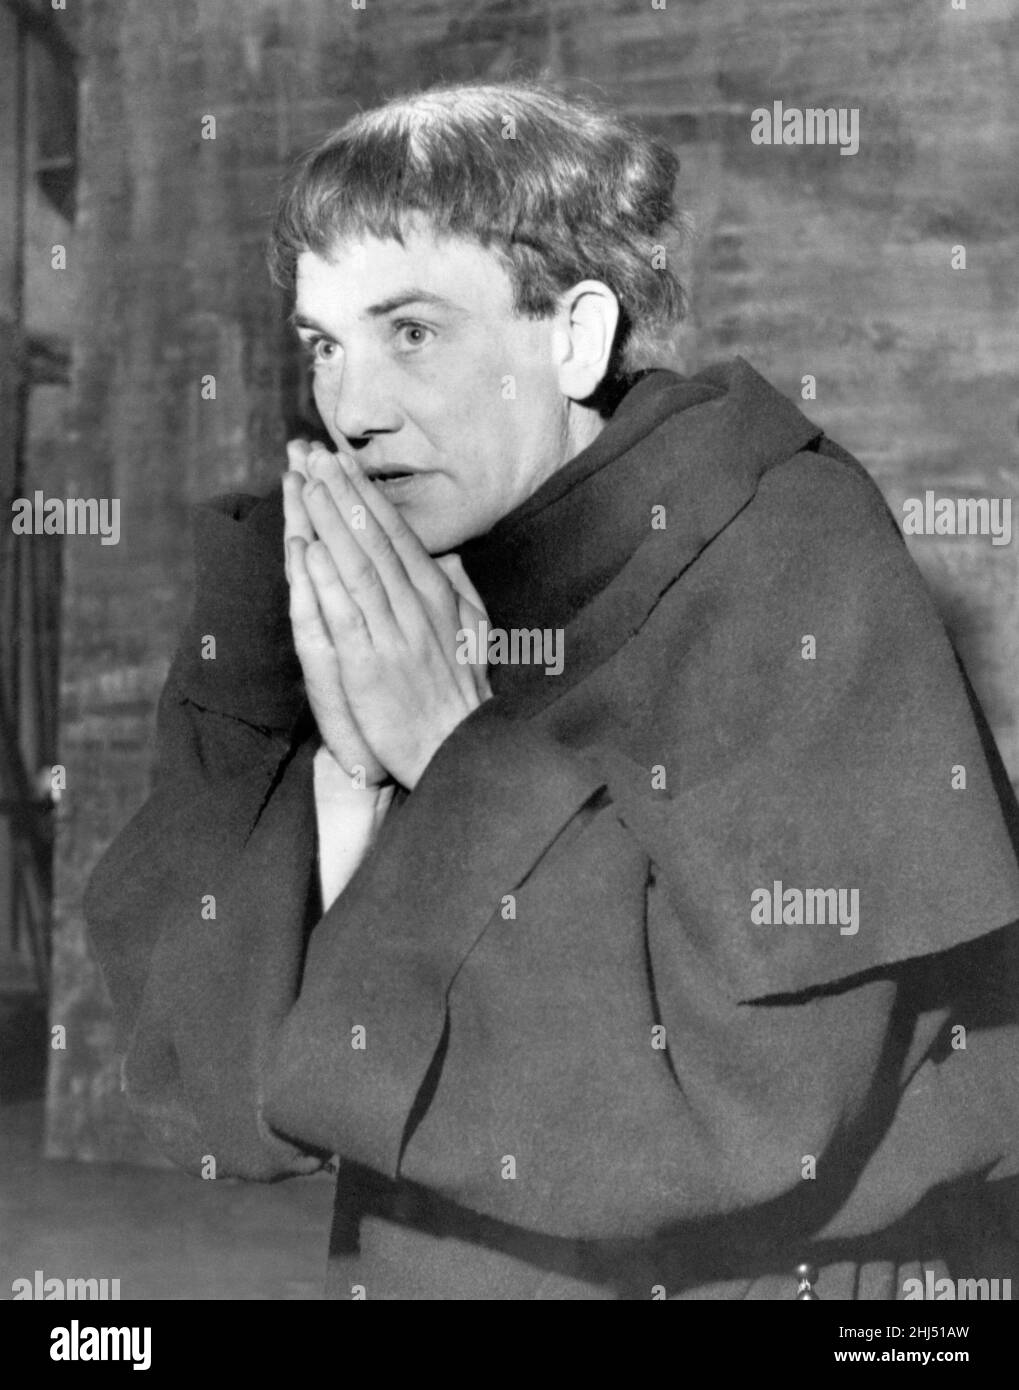 Albert Finney comme Luther dans la pièce du même nom. Juillet 1961 P007011 Banque D'Images